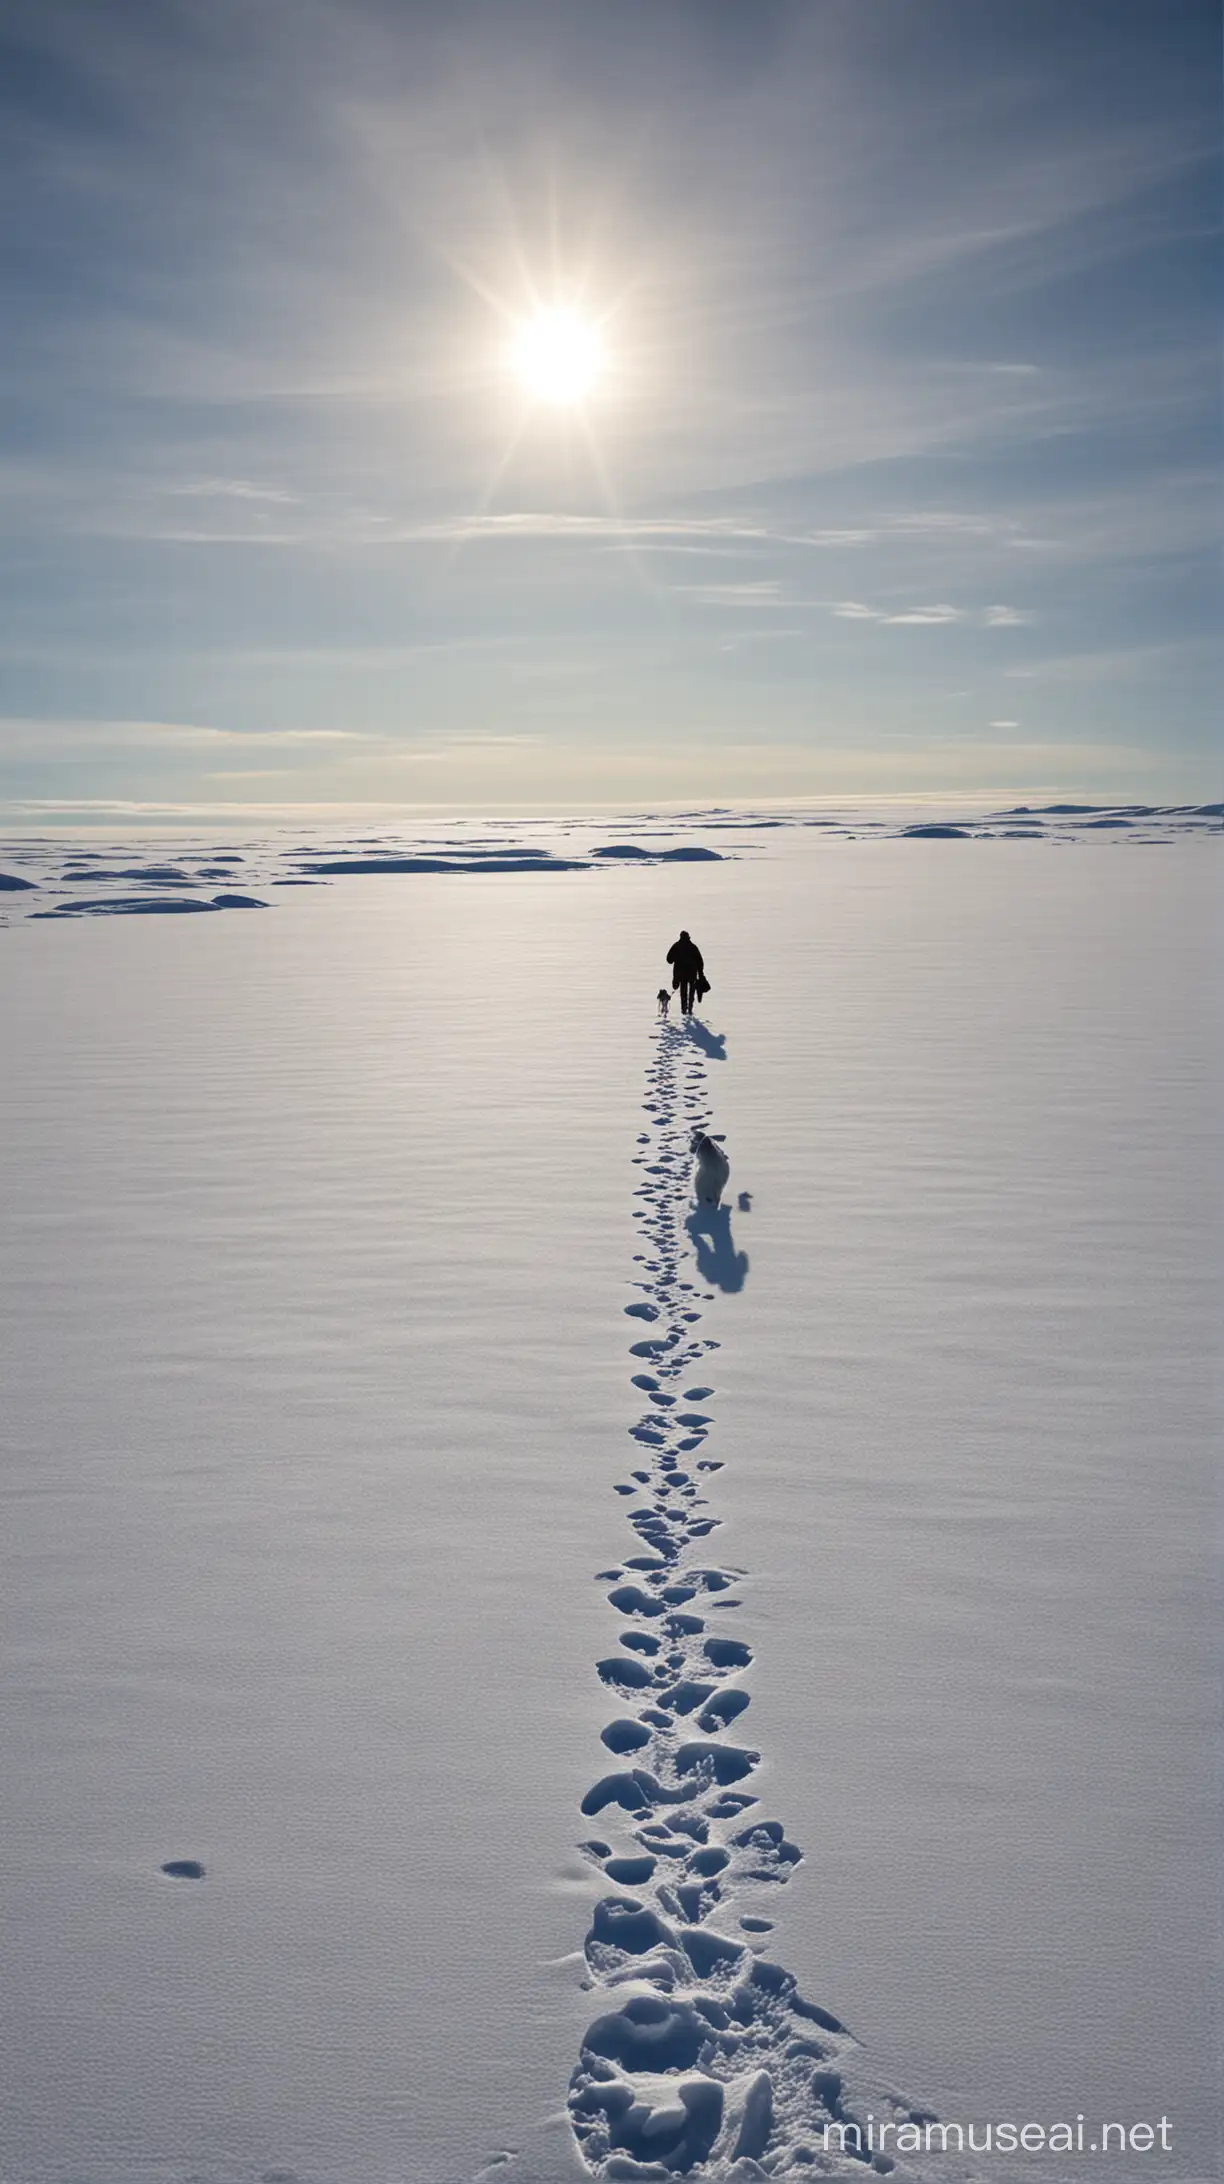 Walk at the North Pole

